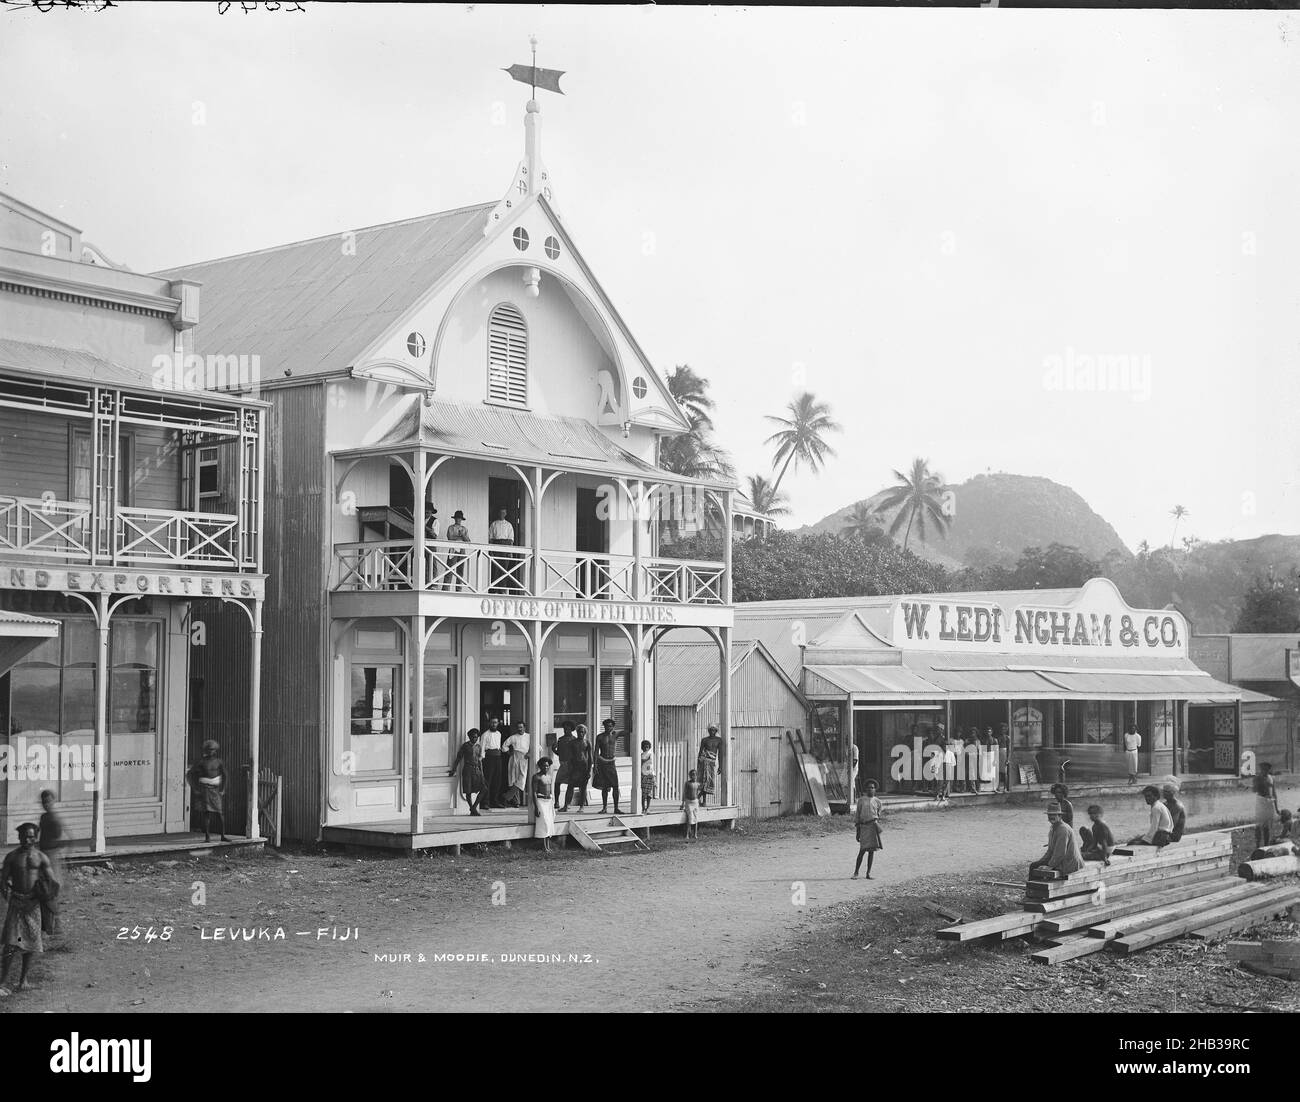 Levuka, Fidji, Burton Brothers studio, studio de photographie, juillet 1884,Nouvelle-Zélande, photographie en noir et blanc, route avec boutiques de la ville.Deux bâtiments de 2 étages avec des vérandahs et deux autres bâtiments, en face est une pile de bois sur lequel les jeunes enfants et un adulte sont assis.Le bâtiment principal (2 étages) est doté d'un panneau Office of the Fiji Times et, à côté, d'un seul étage avec panneau W. Ledingham & Co.Le fond est une colline avec des cocotiers Banque D'Images